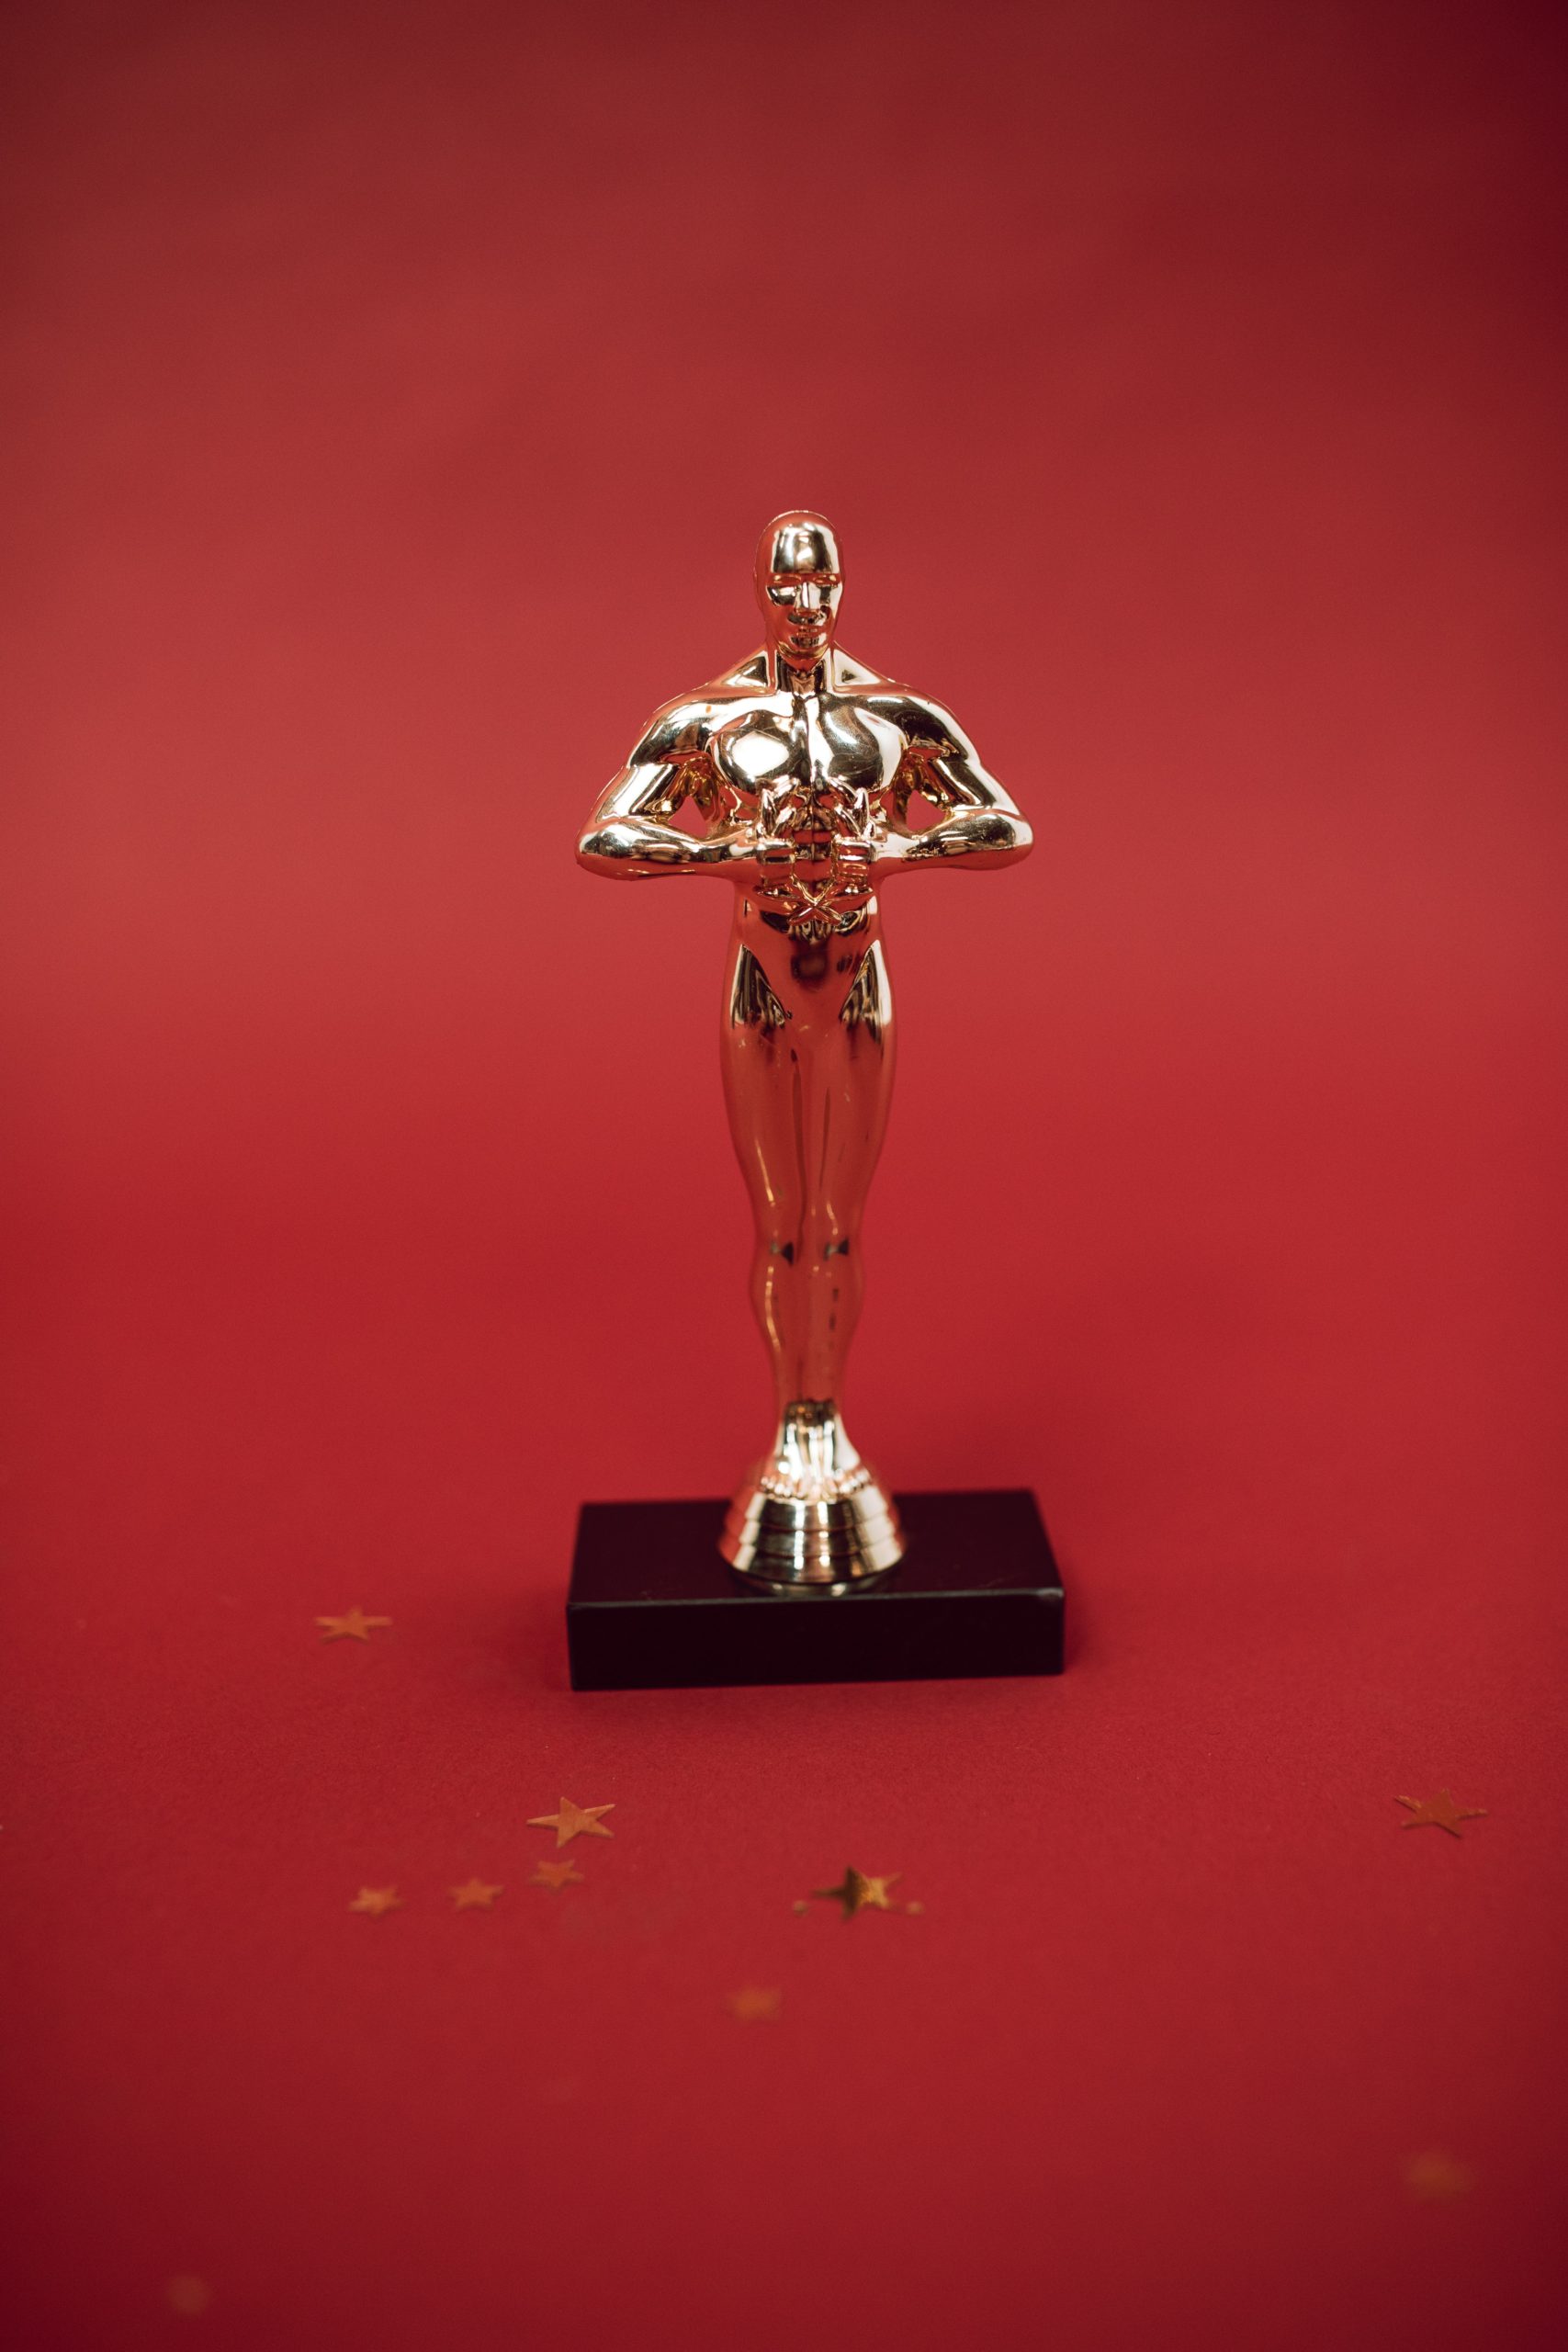 Ovogodišnje nominacije za Oskara i iznenađenja koja one donose